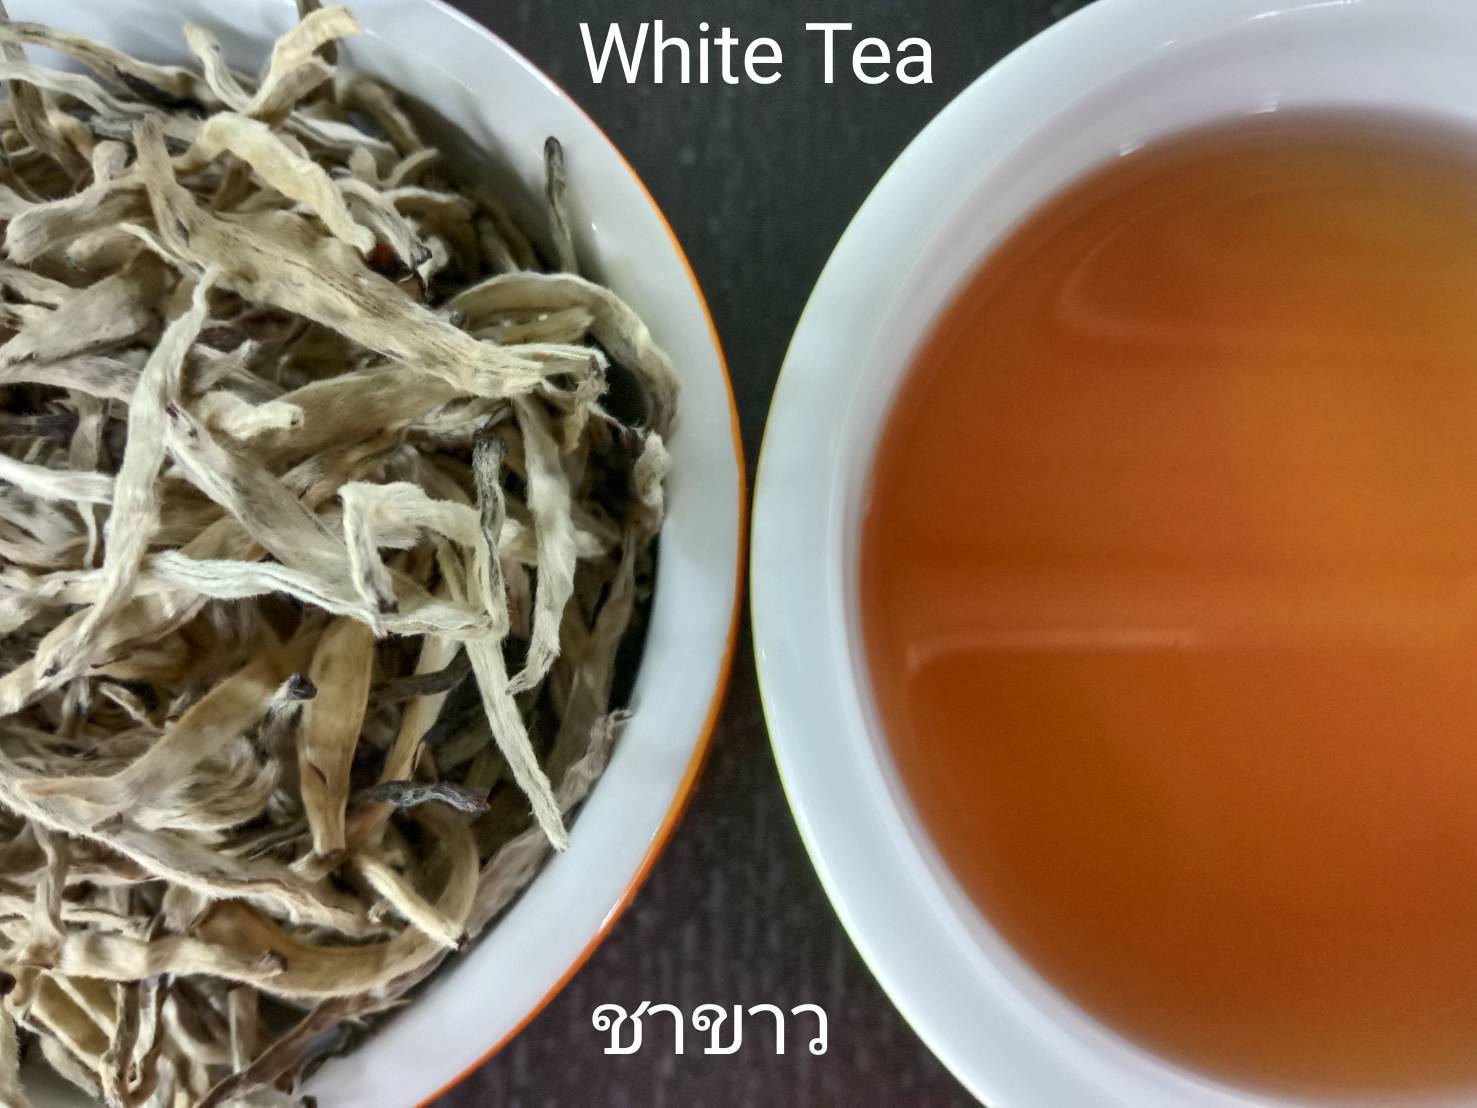 ชาขาวอัสสัม ออร์แกนิค (ตราดอยปู่หมื่น) 1 กก. Organic assam white tea (Doi Pumuen Brand) 1 kg.